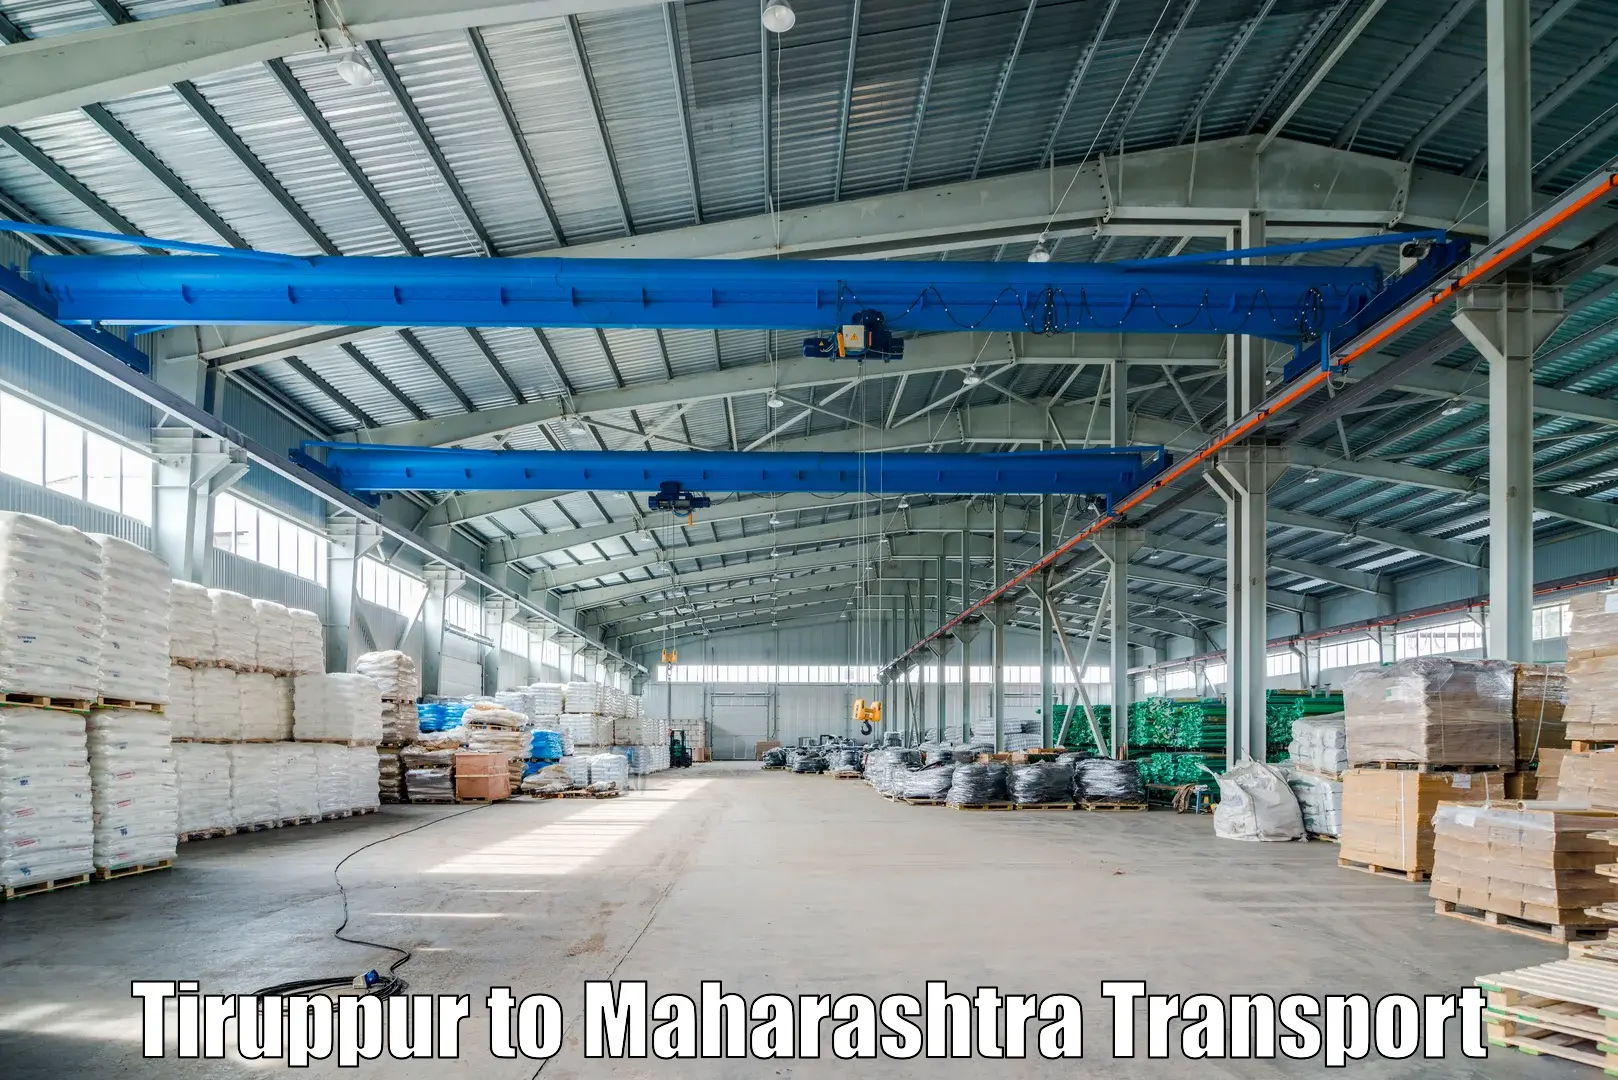 Furniture transport service Tiruppur to Alibag